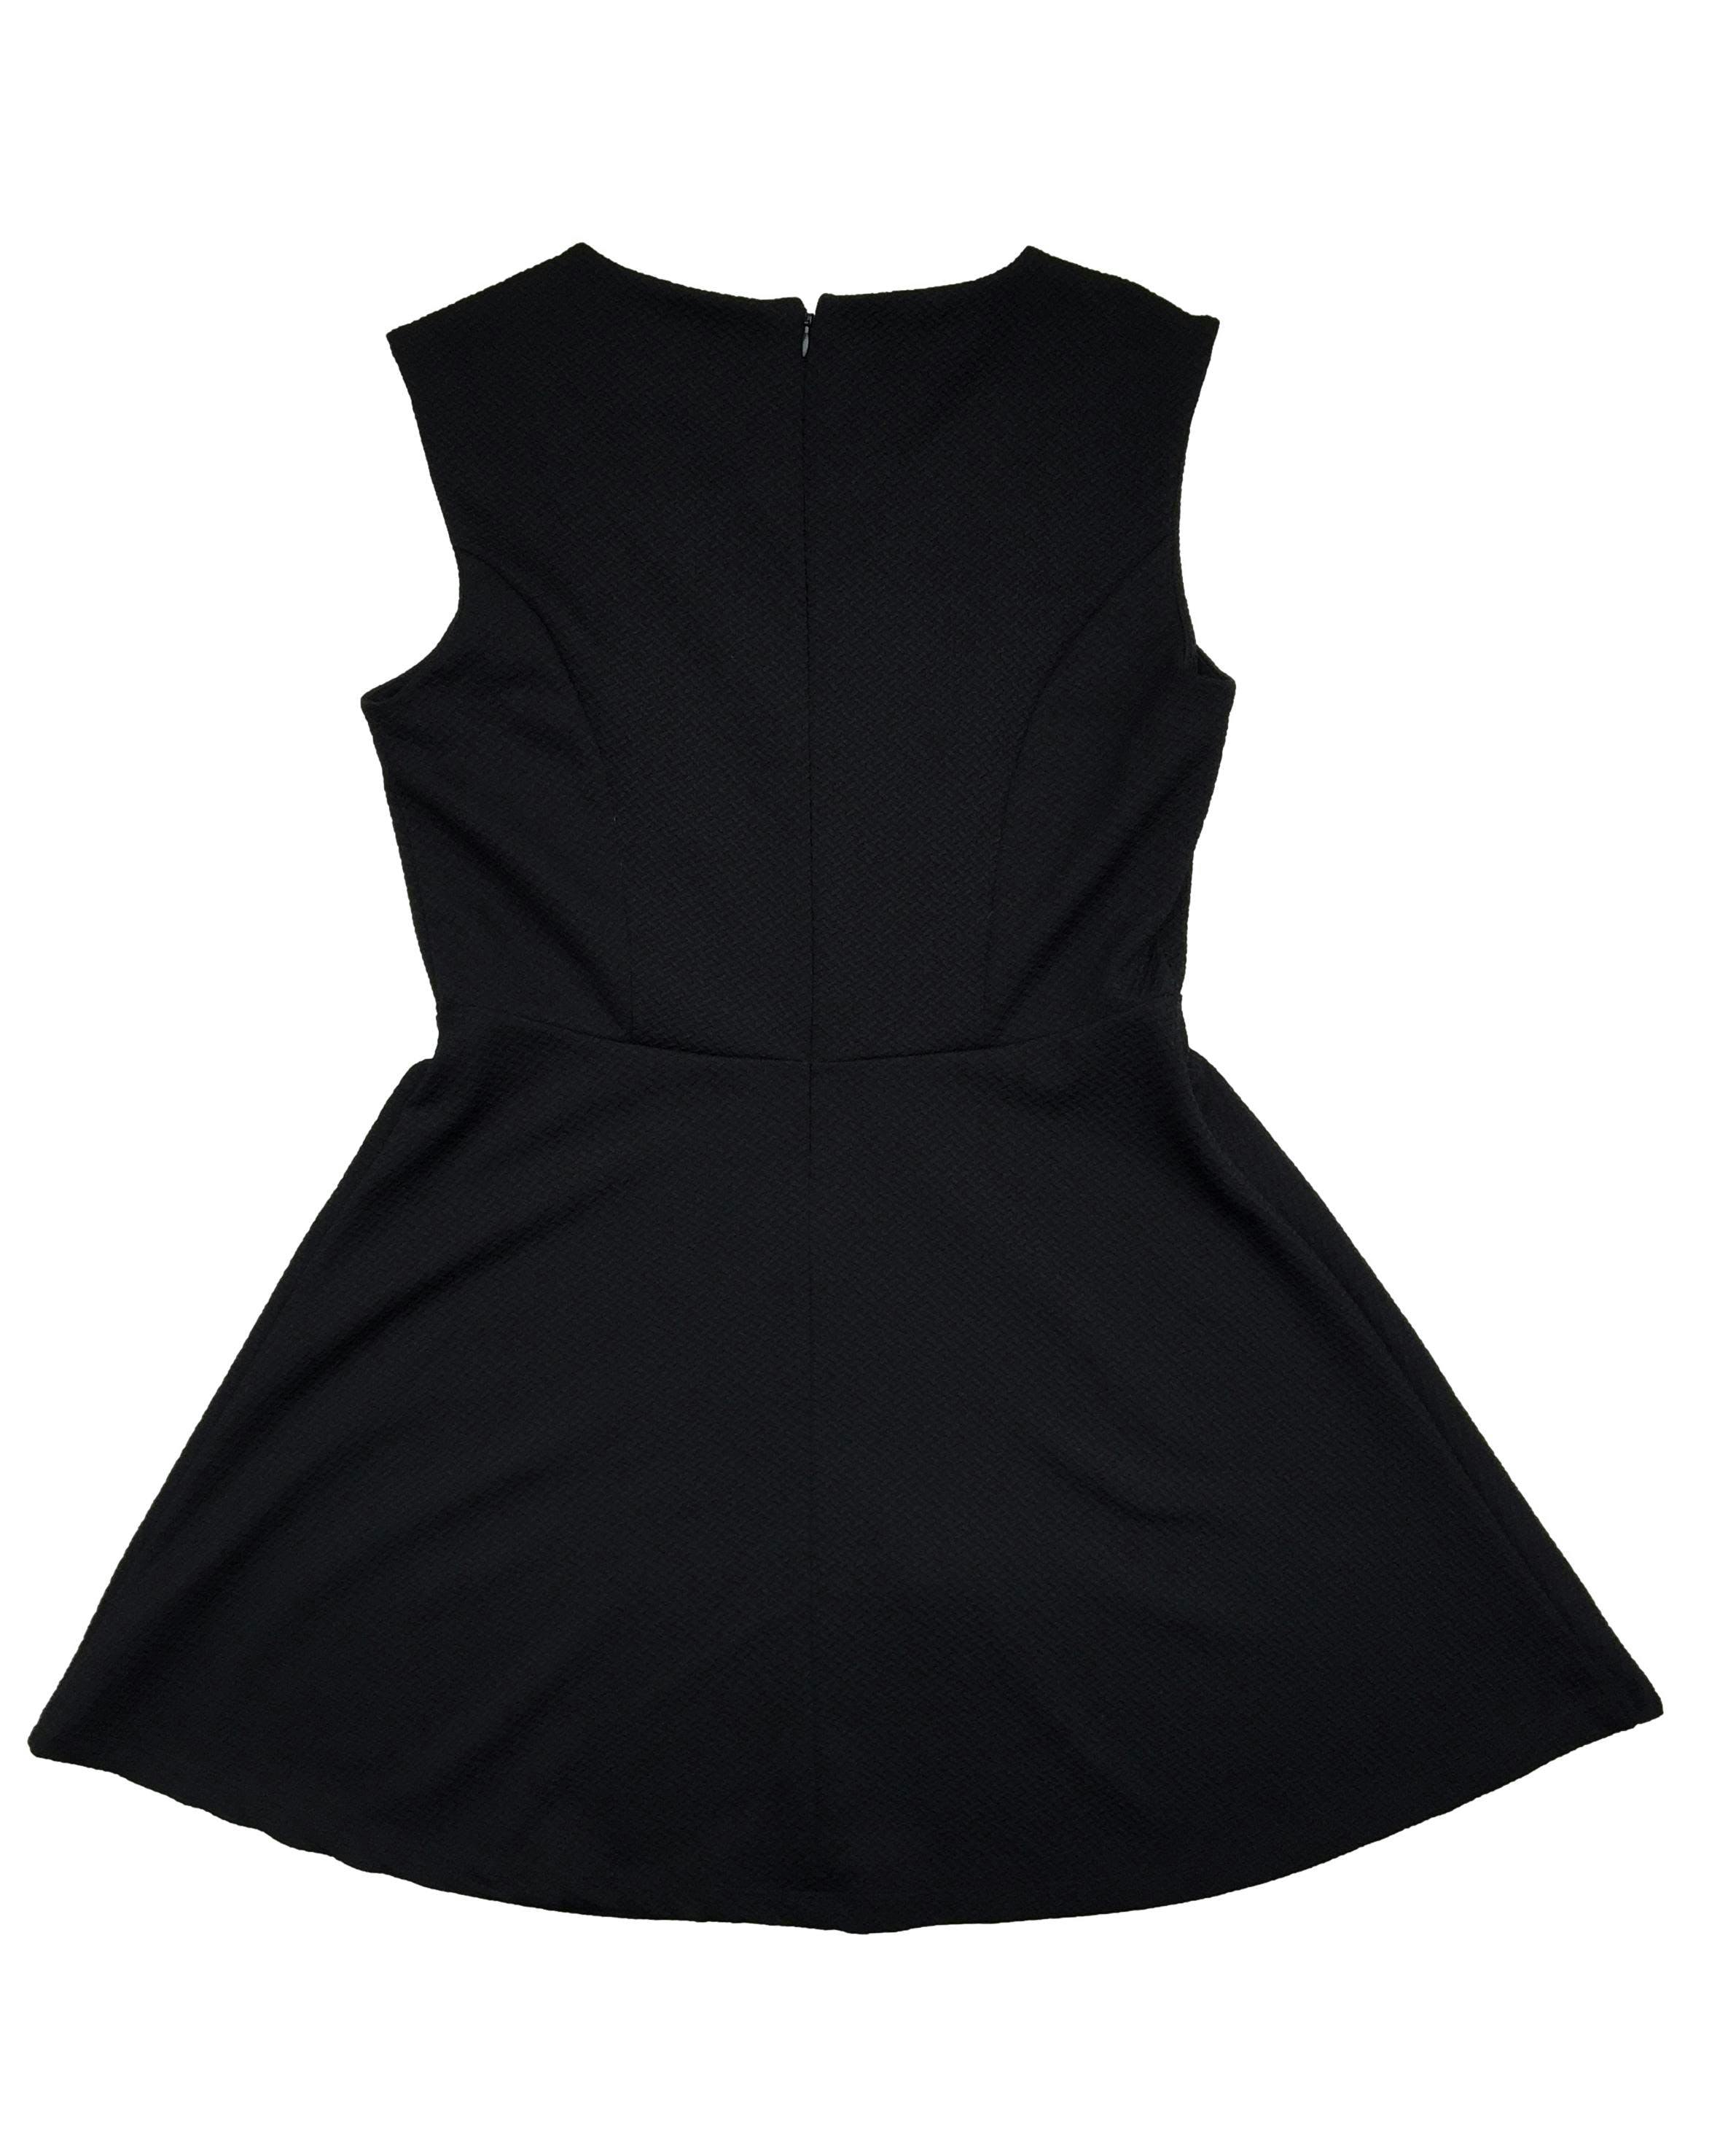 Vestido negro Etc con textura con falda semicampana, cierre posterior. Busto 96 cm, Largo 82 cm